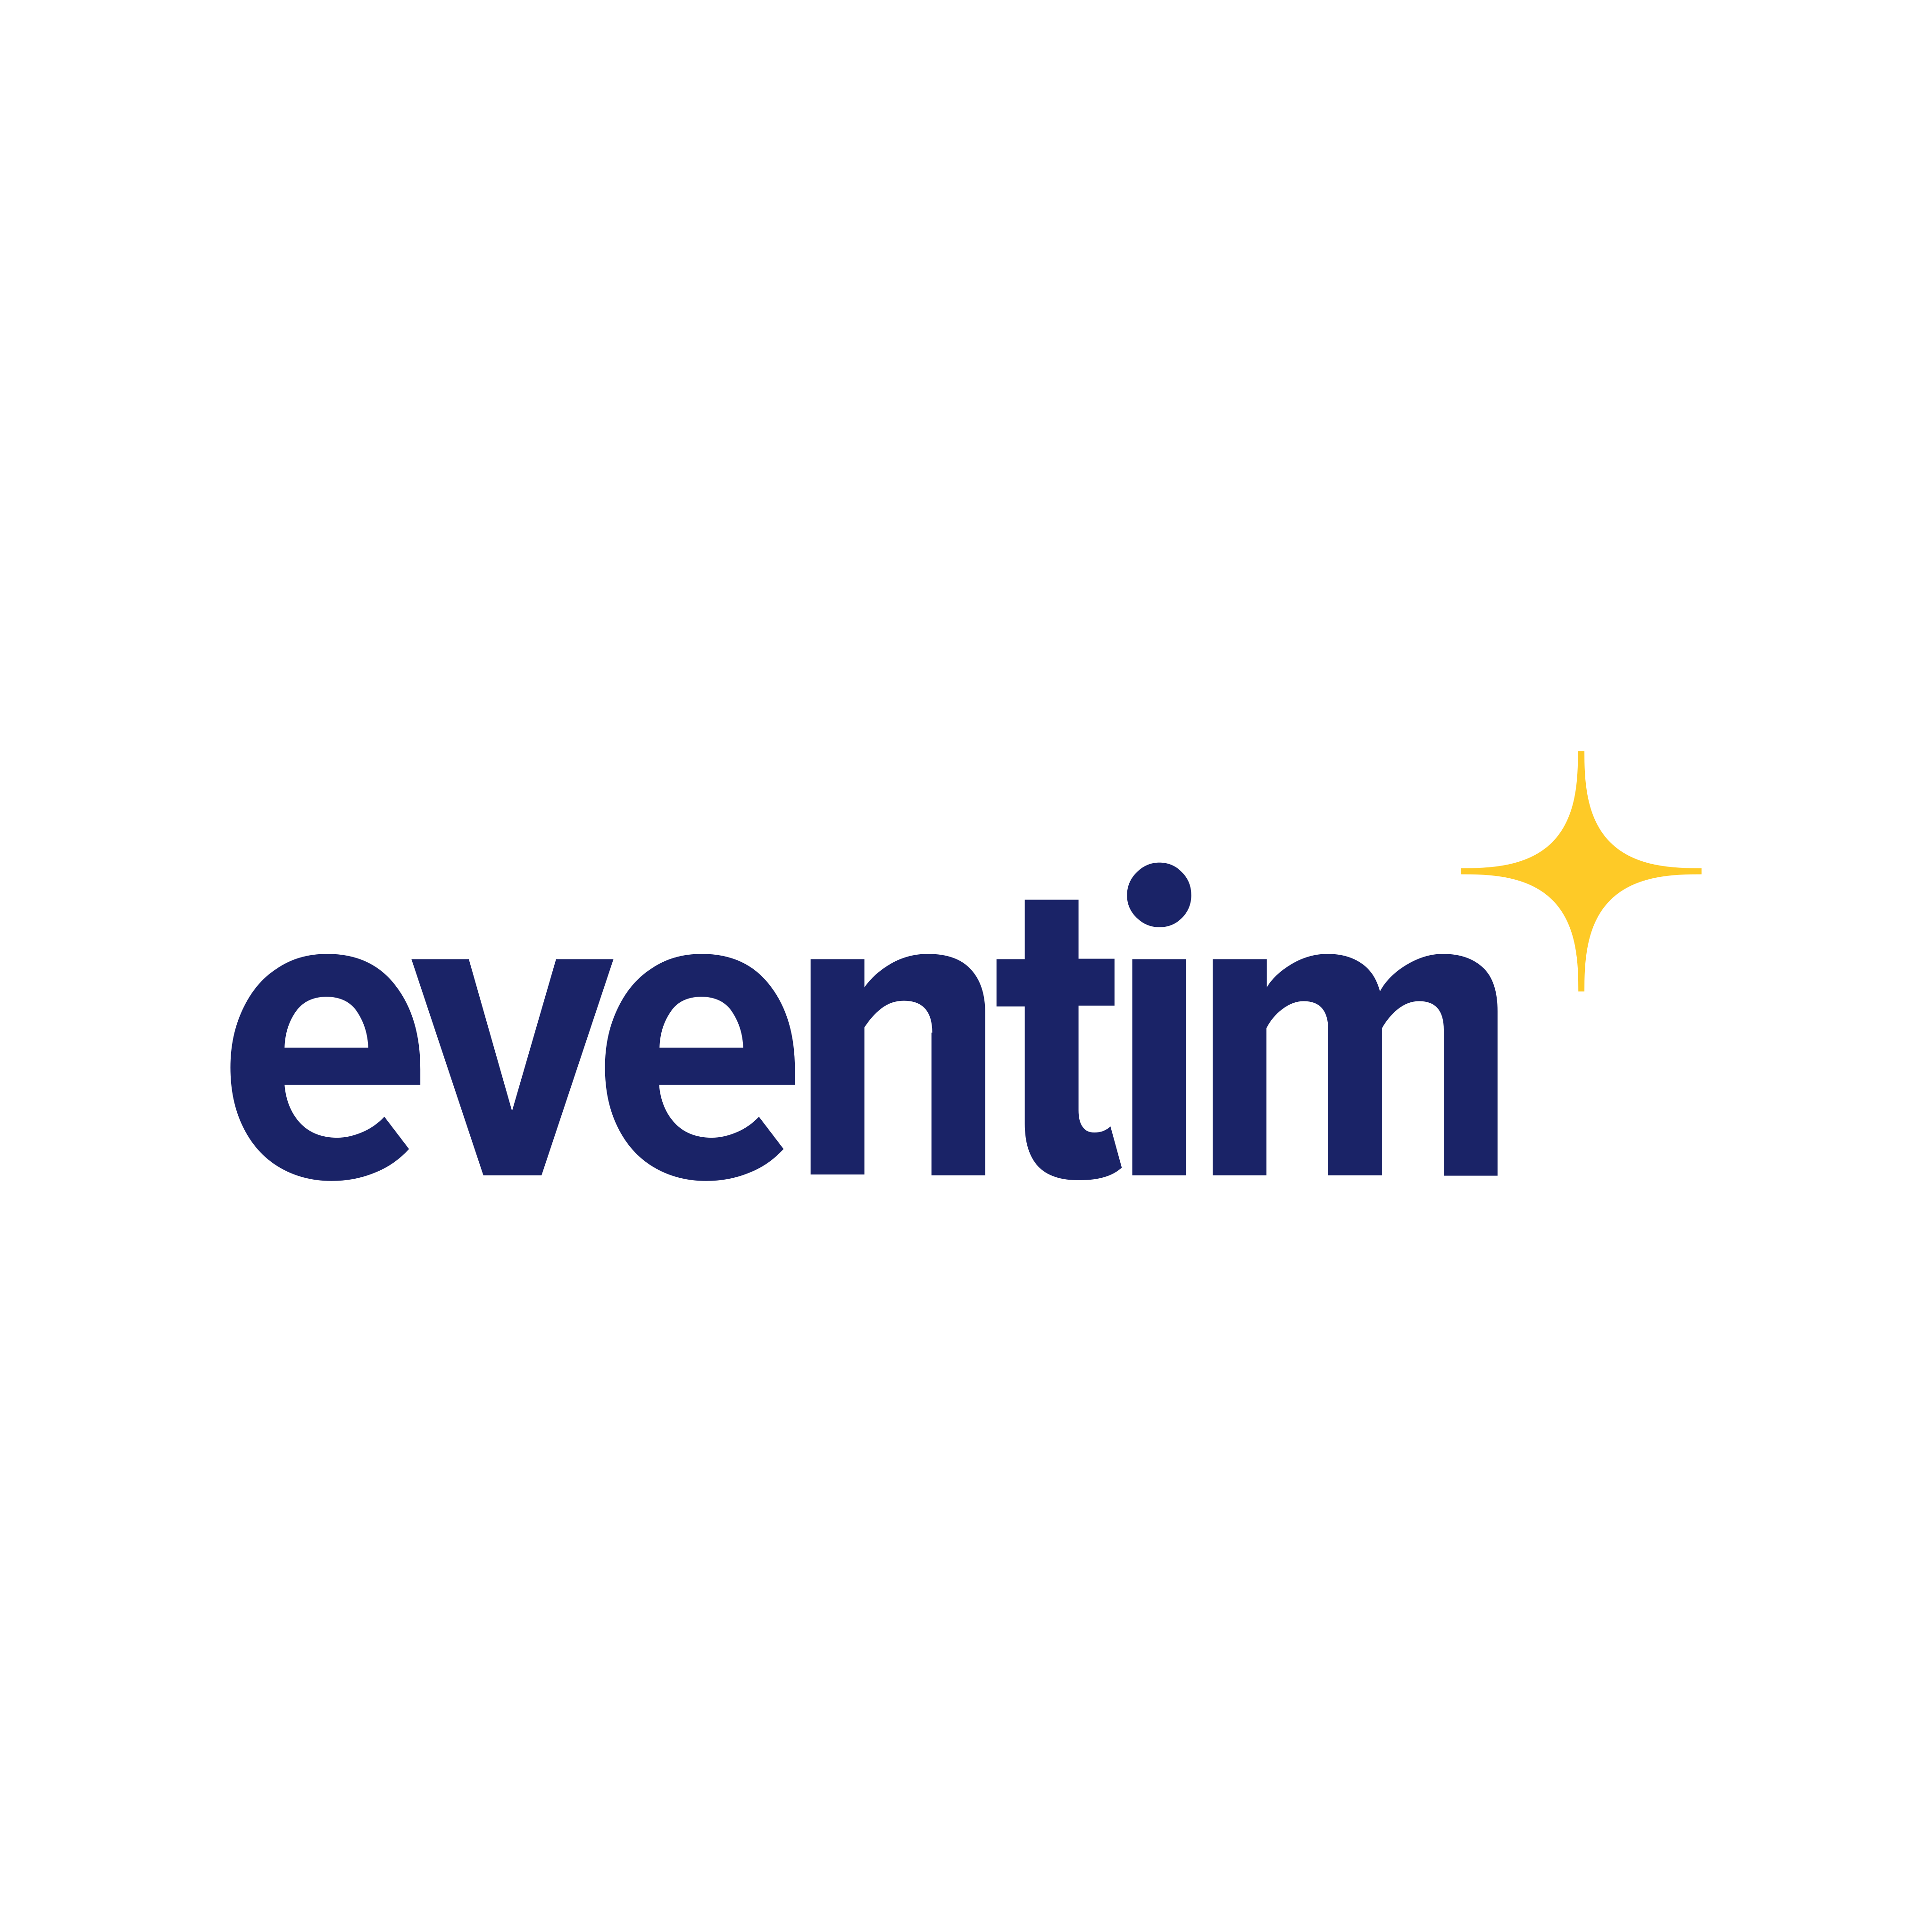 eventim logo 0 - Eventim Logo